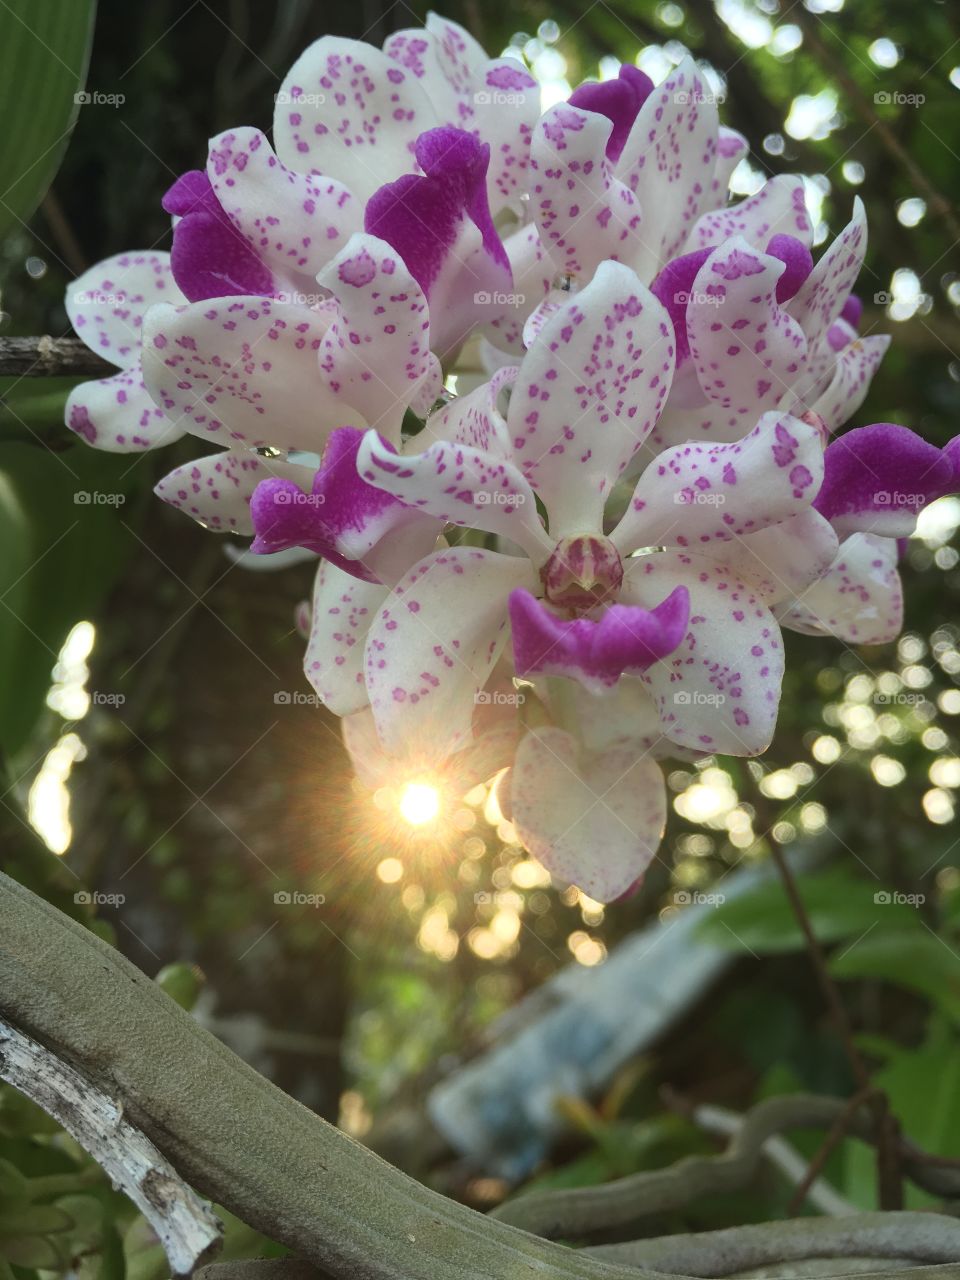 Rhynchostylis Orchid